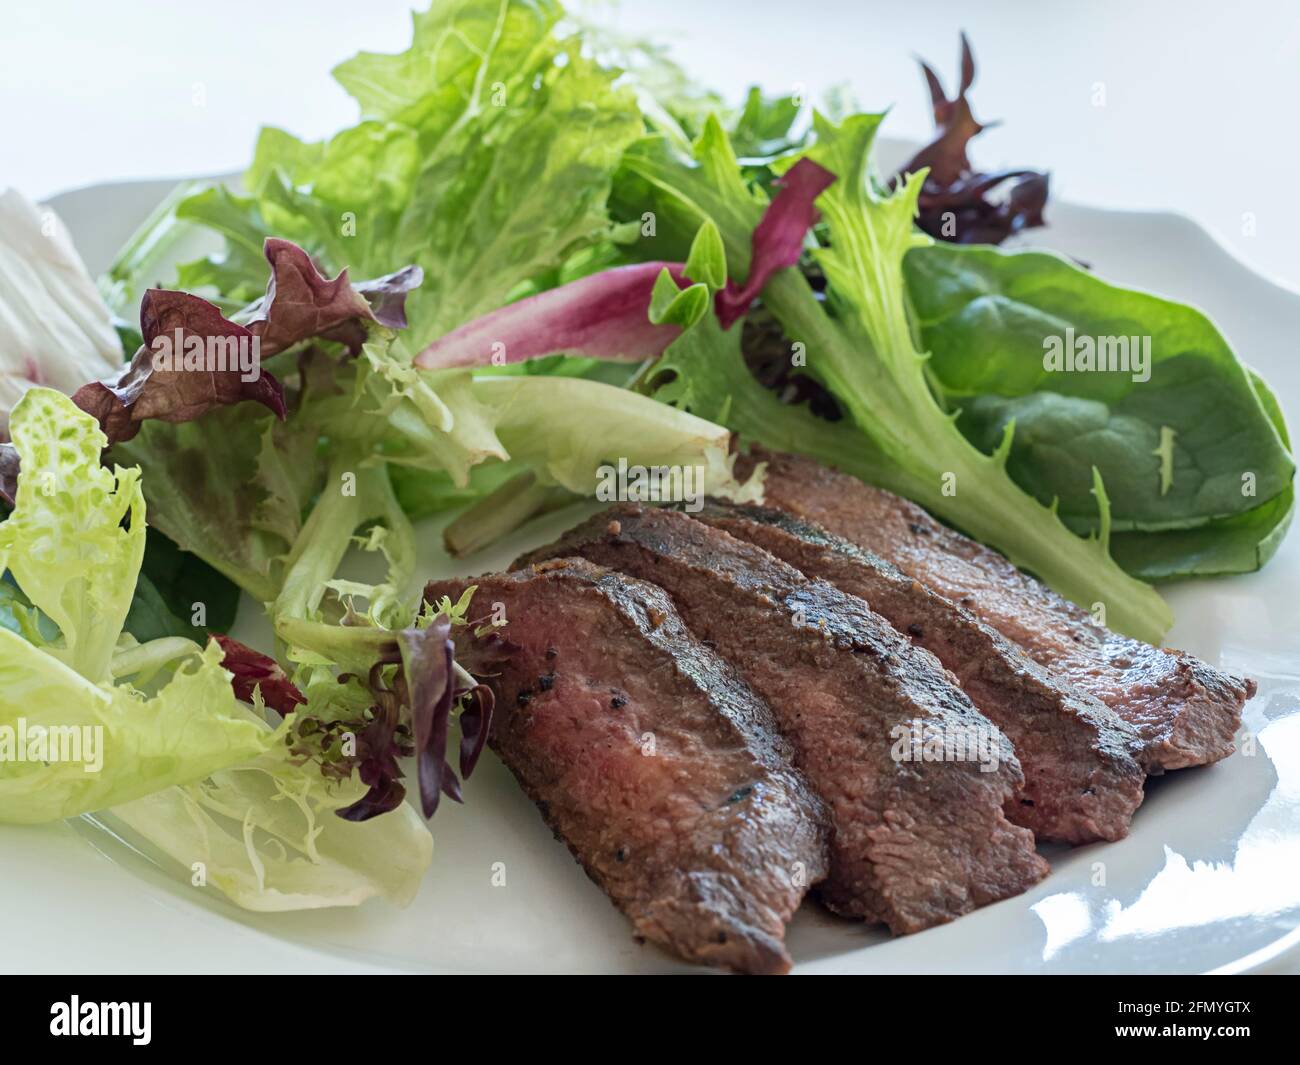 Vue rapprochée d'une salade verte avec des tranches de steak de bœuf Banque D'Images